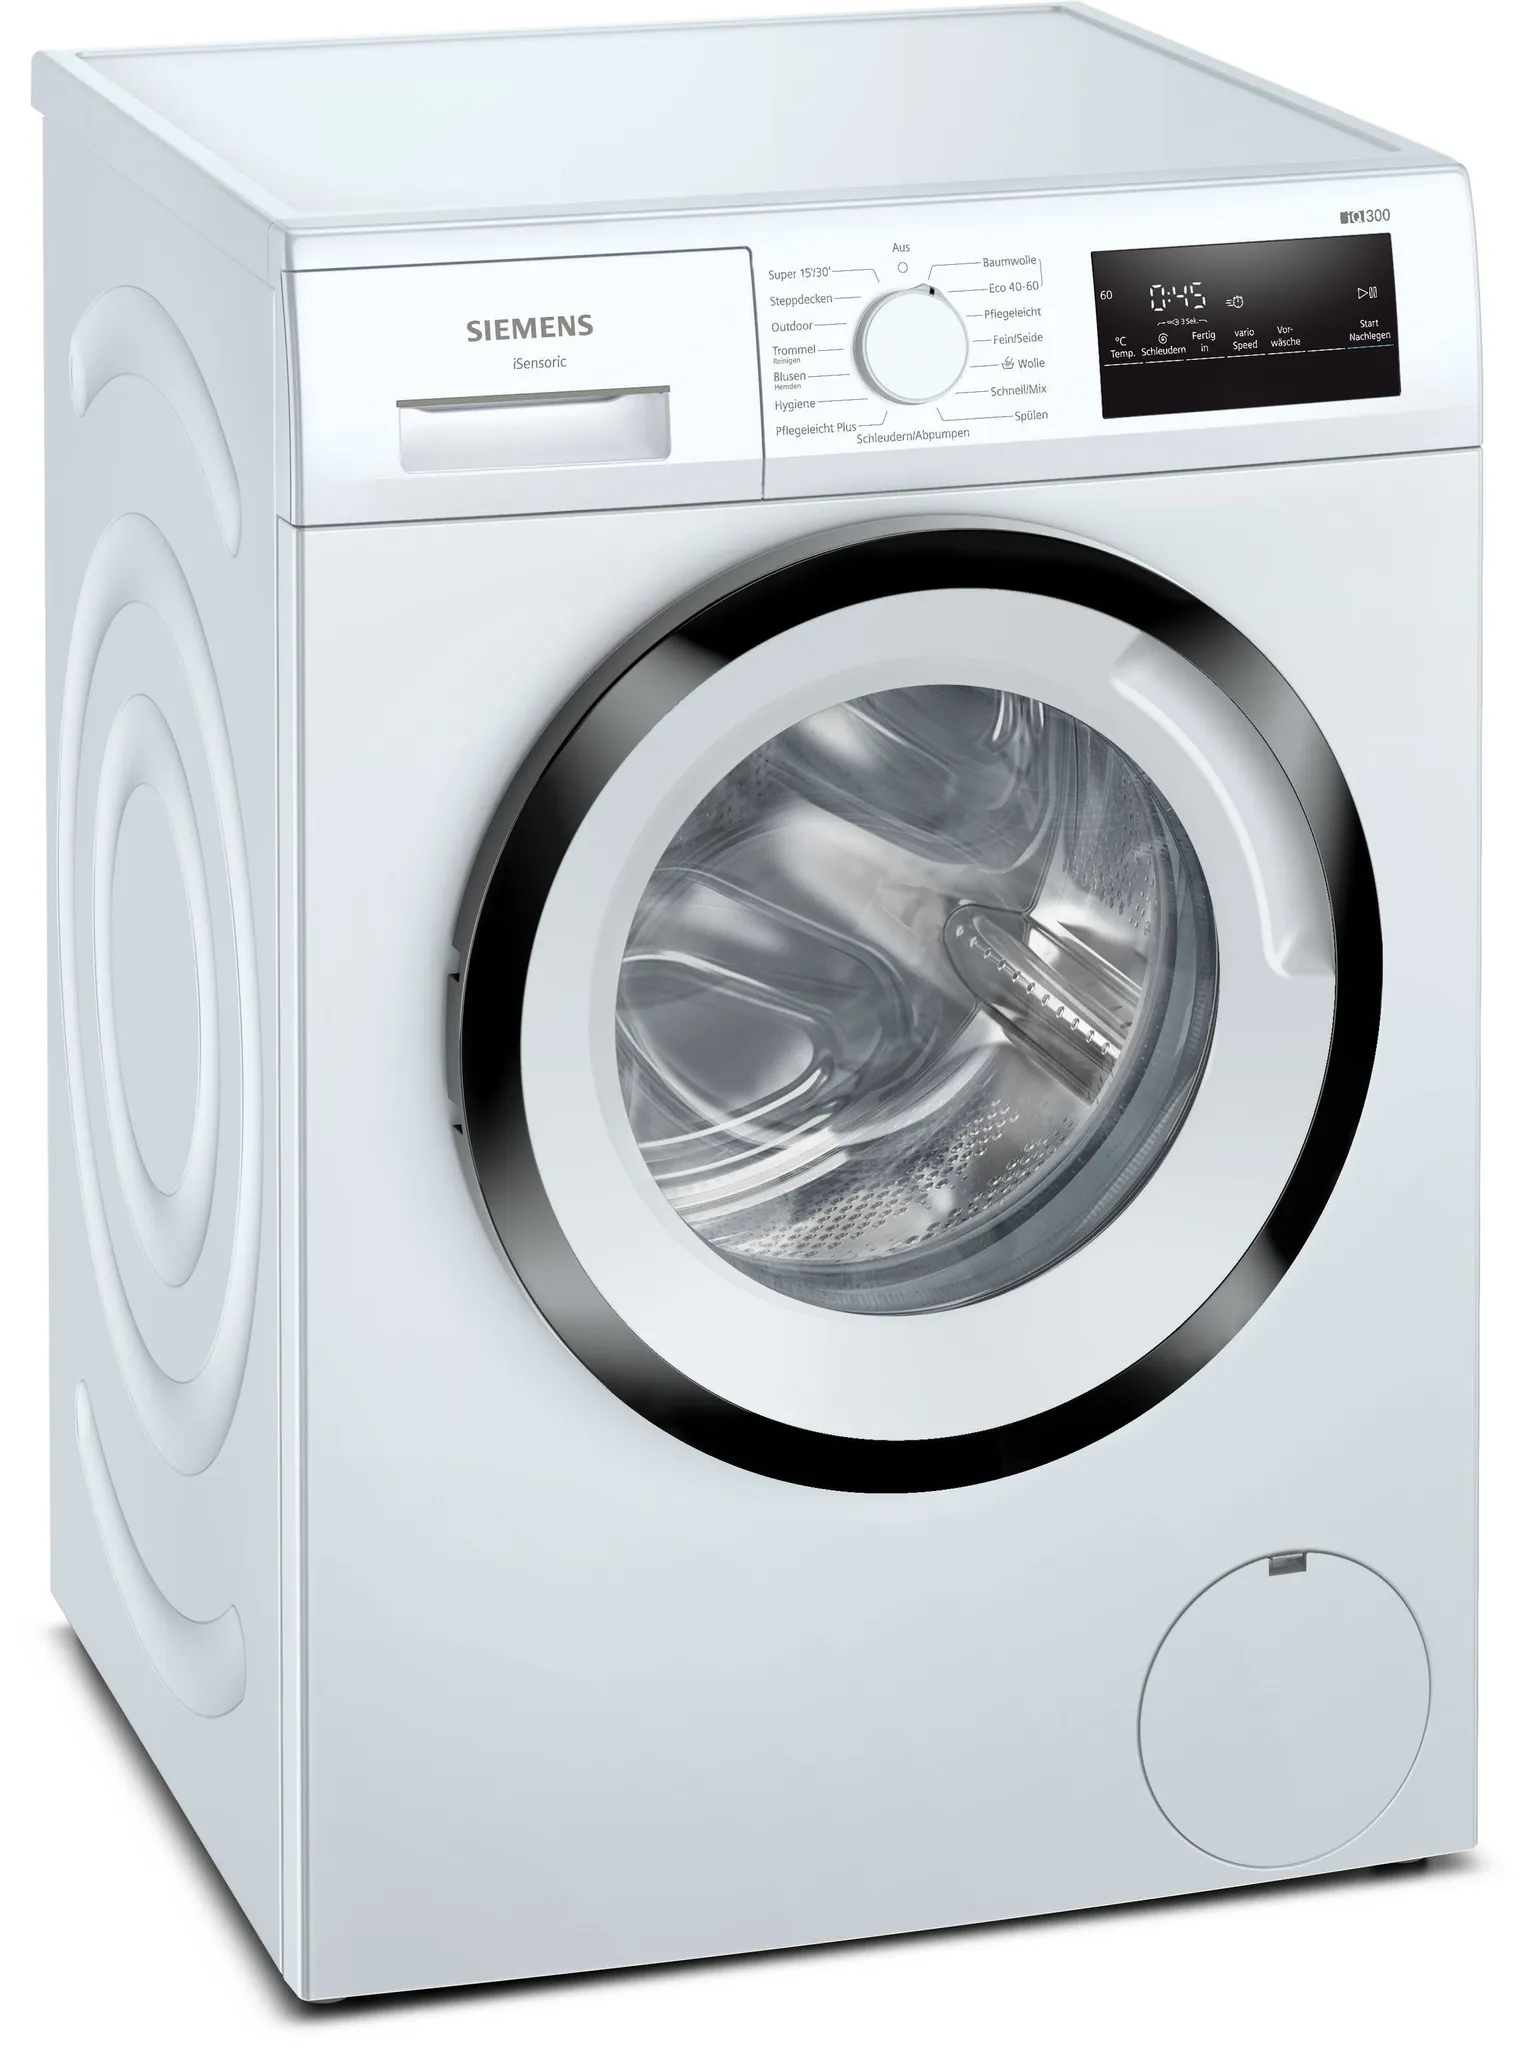 Siemens iQ300, Waschmaschine, Frontlader, WM14N123 7 kg, 1400 U/min